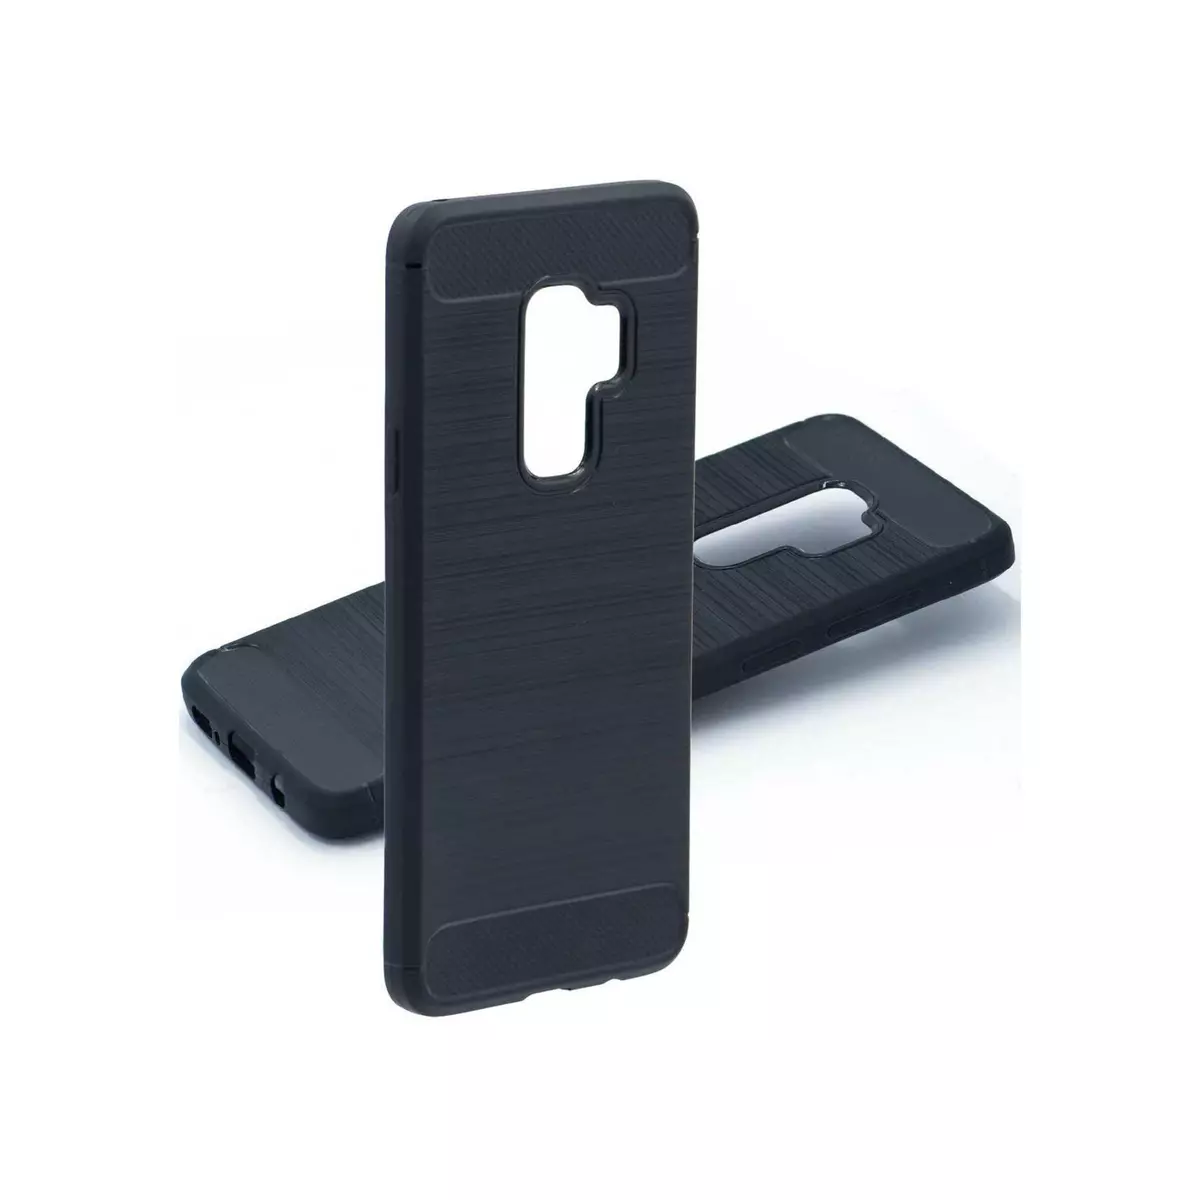 amahousse Coque Galaxy S9 Plus souple noire effet carbone brossé